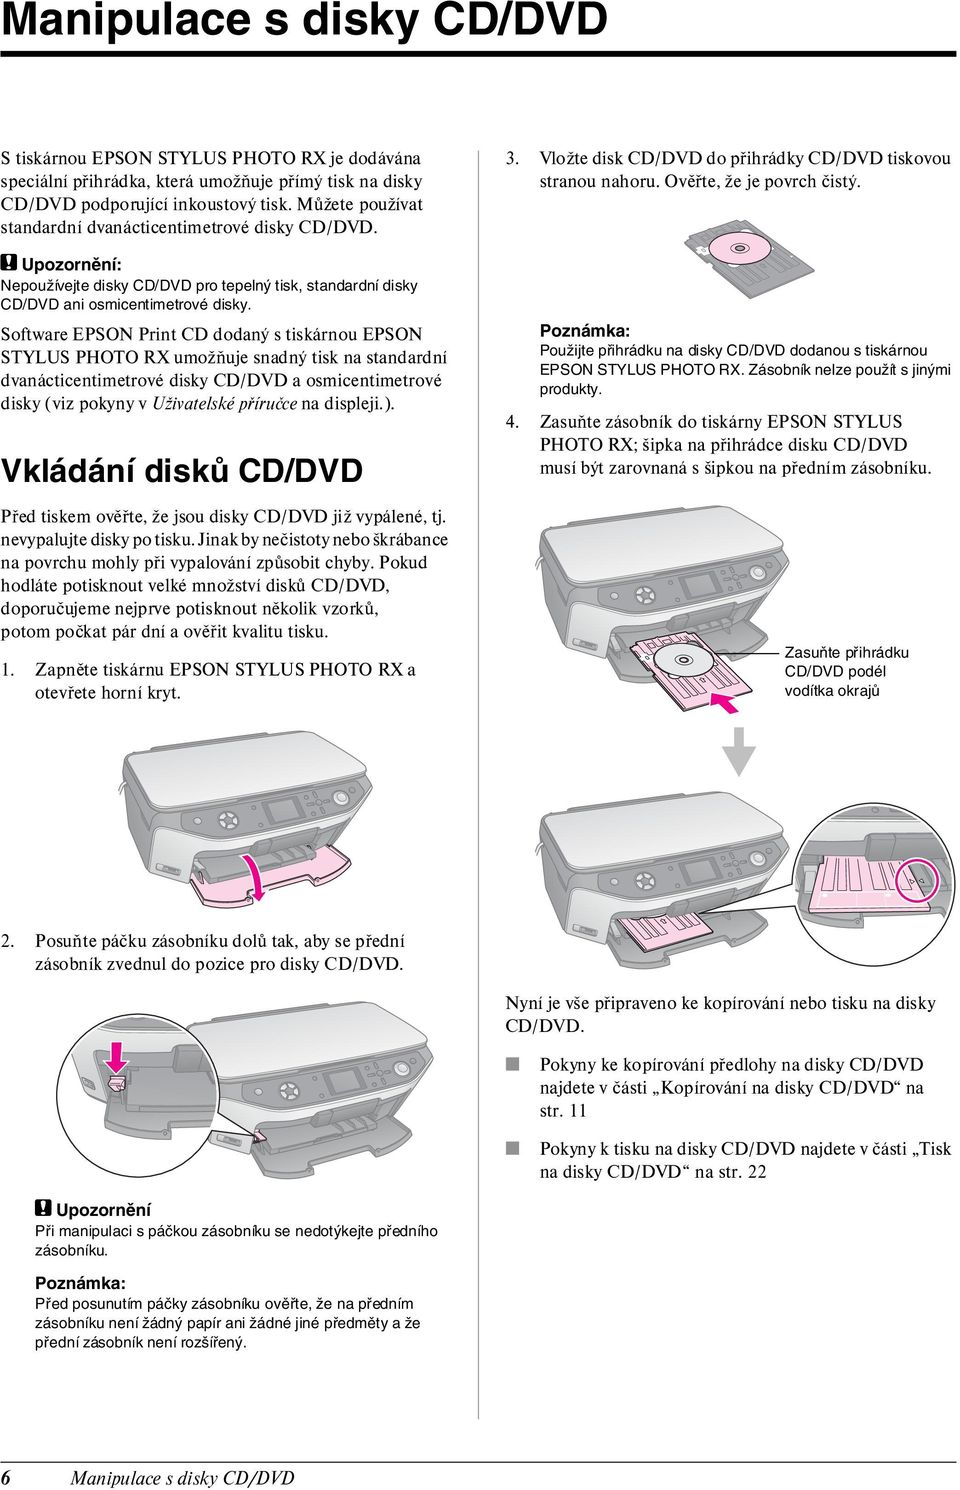 Software EPSON Print CD dodaný s tiskárnou EPSON STYLUS PHOTO RX umožňuje snadný tisk na standardní dvanácticentimetrové disky CD/DVD a osmicentimetrové disky (viz pokyny v Uživatelské příručce na